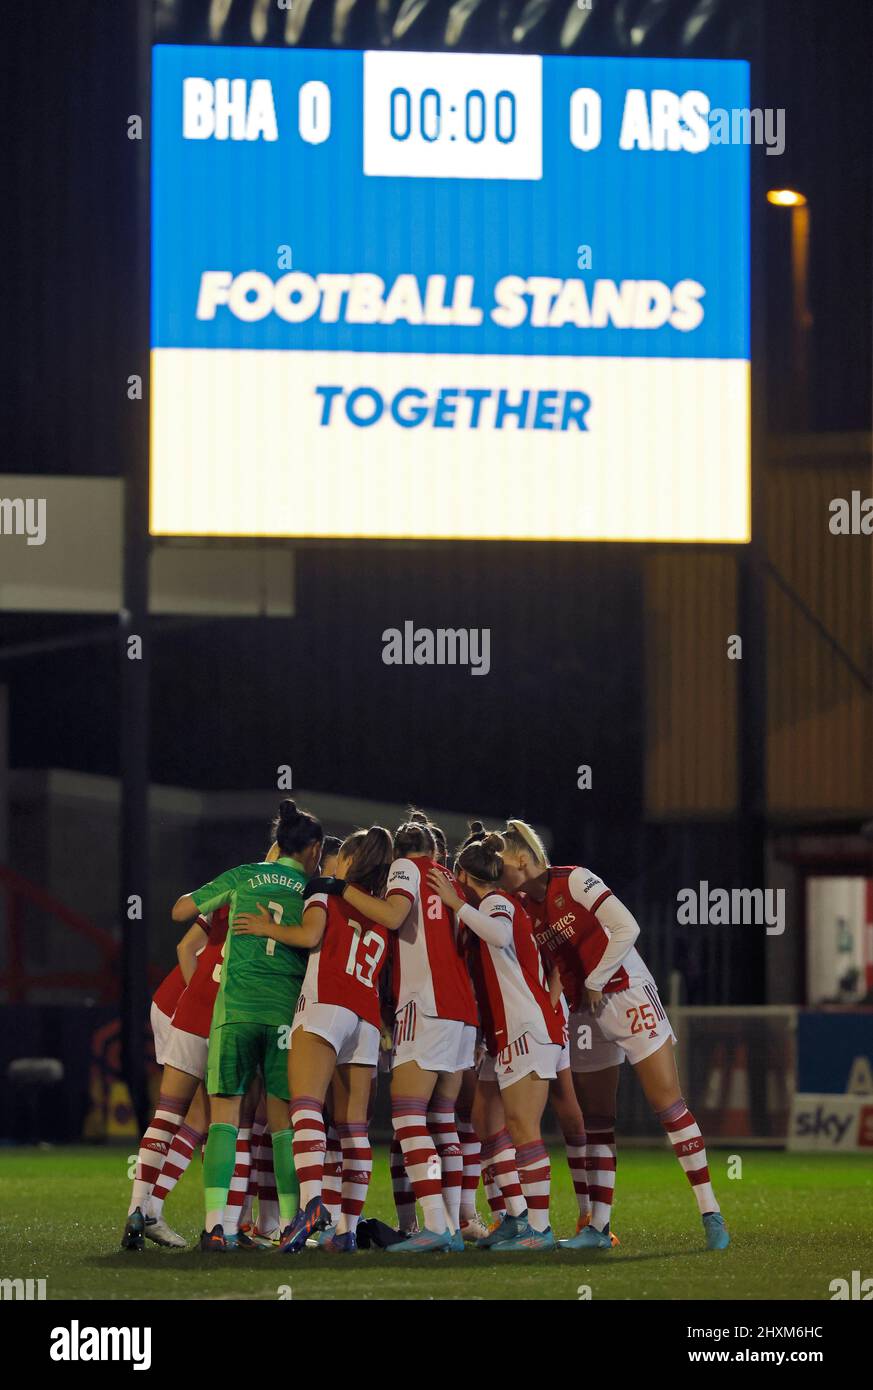 Arsenal-Spieler in einer Gruppe spielen zusammen, während „Football steht zusammen“ auf der Großleinwand vor dem Barclays FA Women's Super League-Spiel im People's Pension Stadium, Crawley, angezeigt wird. Bilddatum: Sonntag, 13. März 2022. Stockfoto